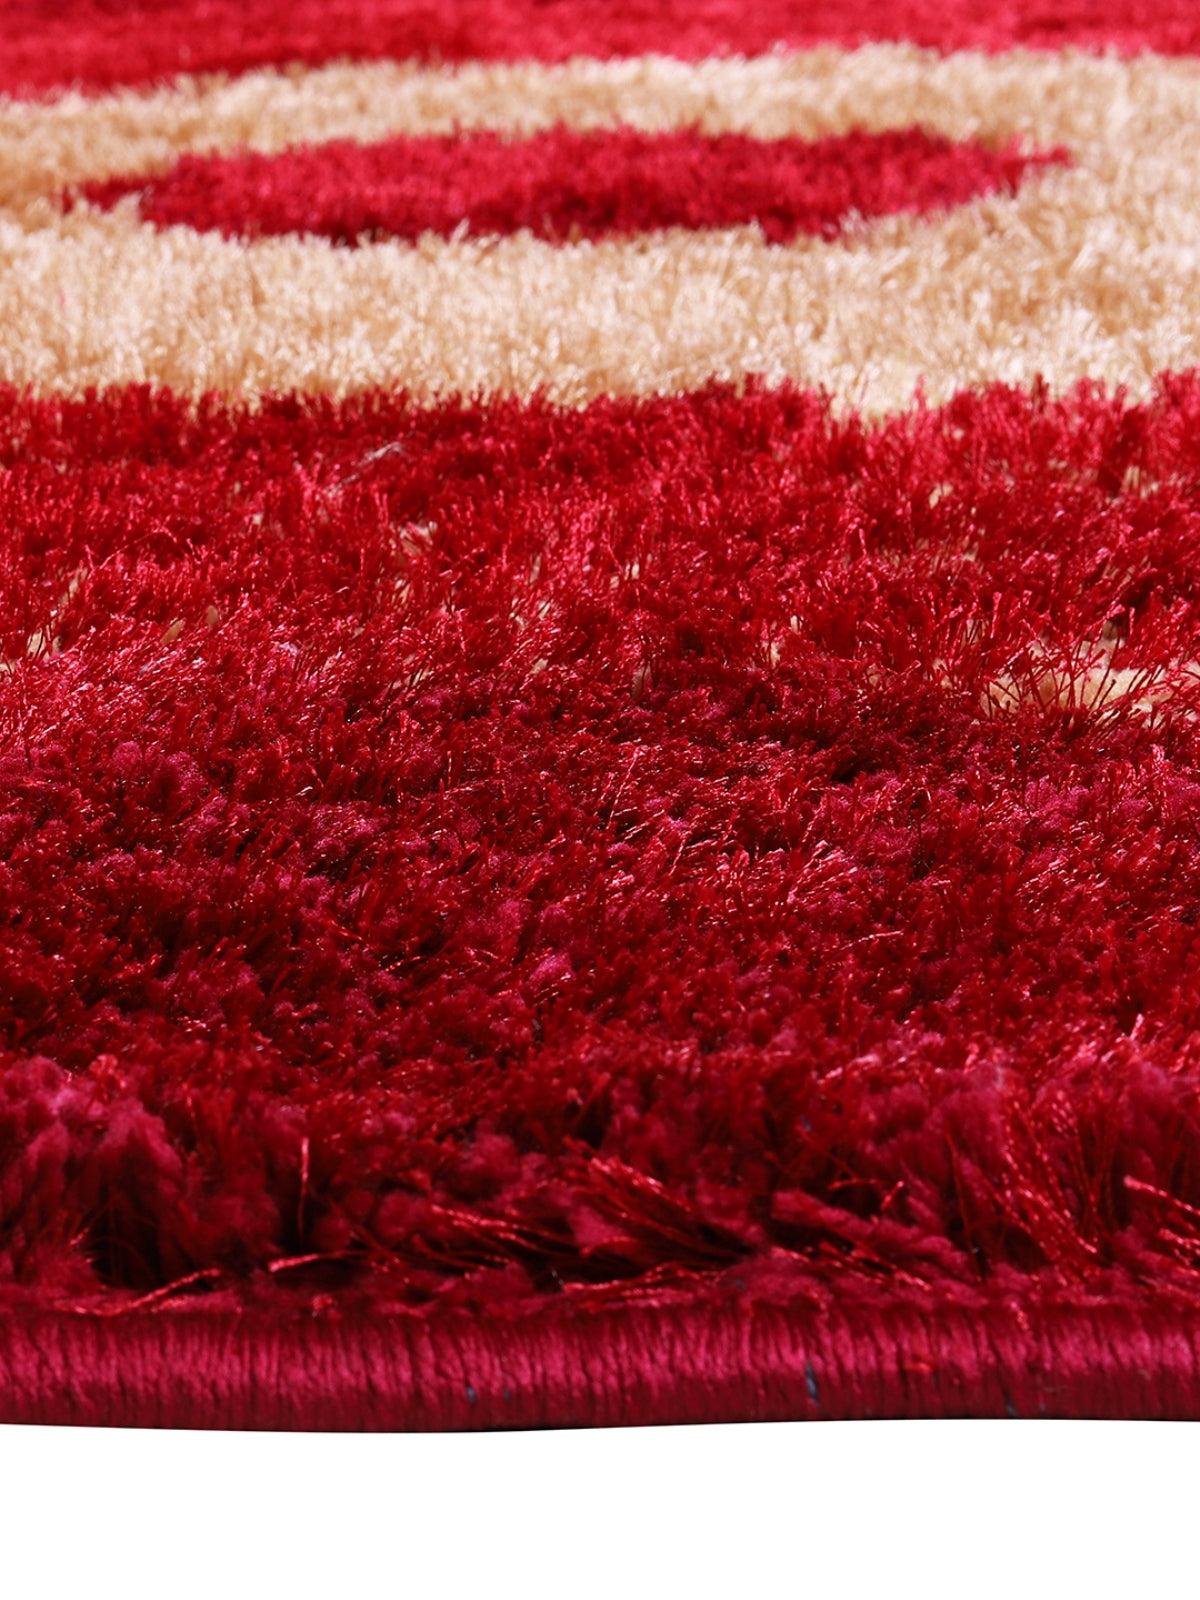 Maroon & Gold Circle Anti-Skid Carpet/Rug